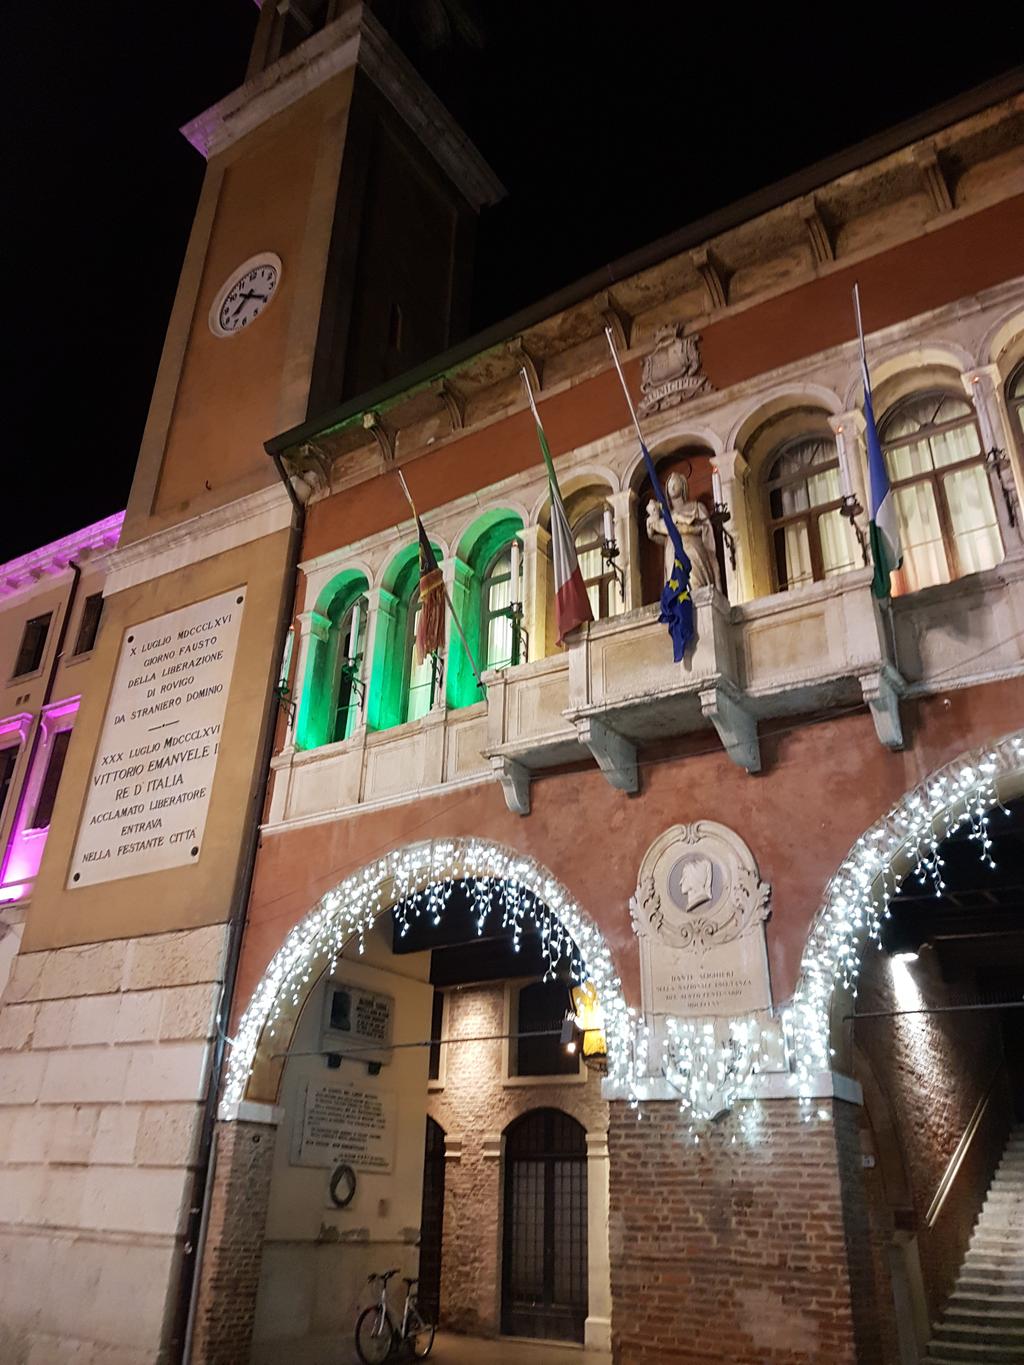 Il Natale si avvicina e Rovigo è pronta ad accoglierlo nel segno della solidarietà.